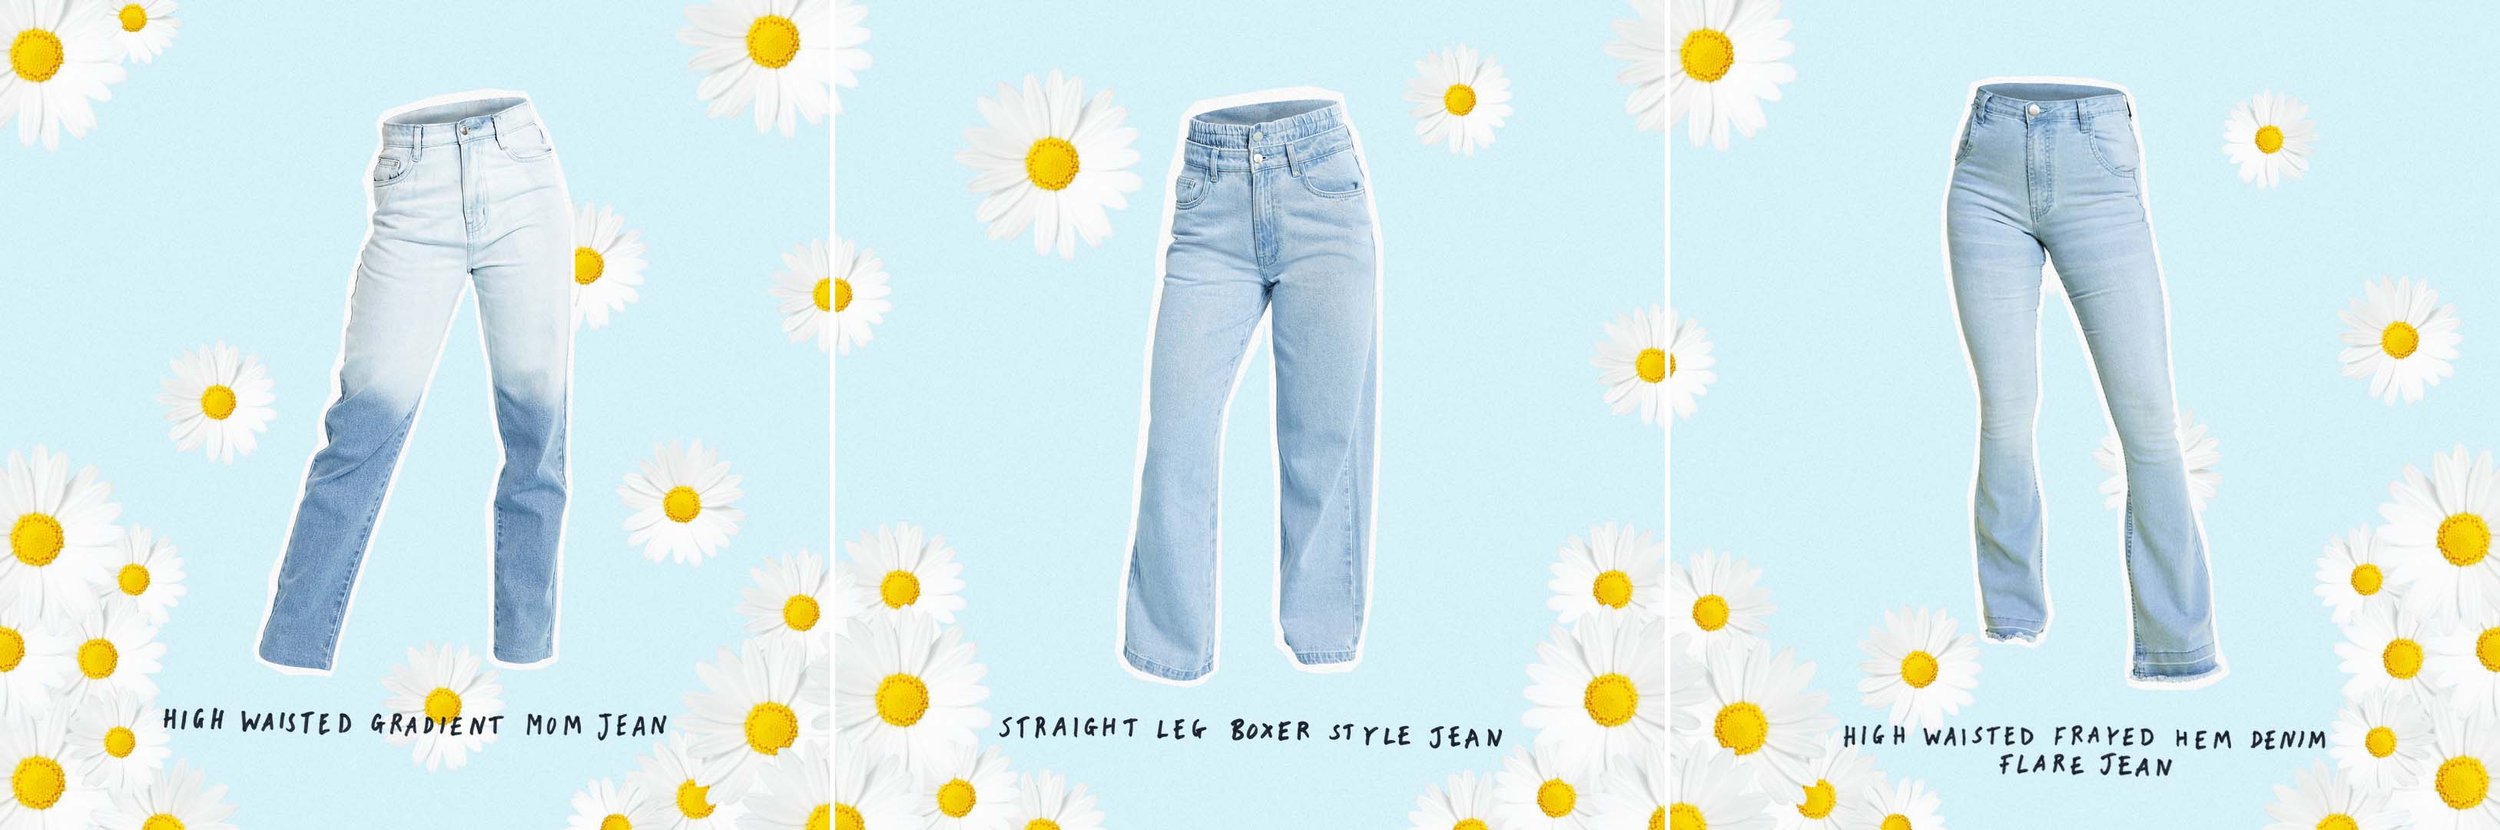 jeans together.jpg